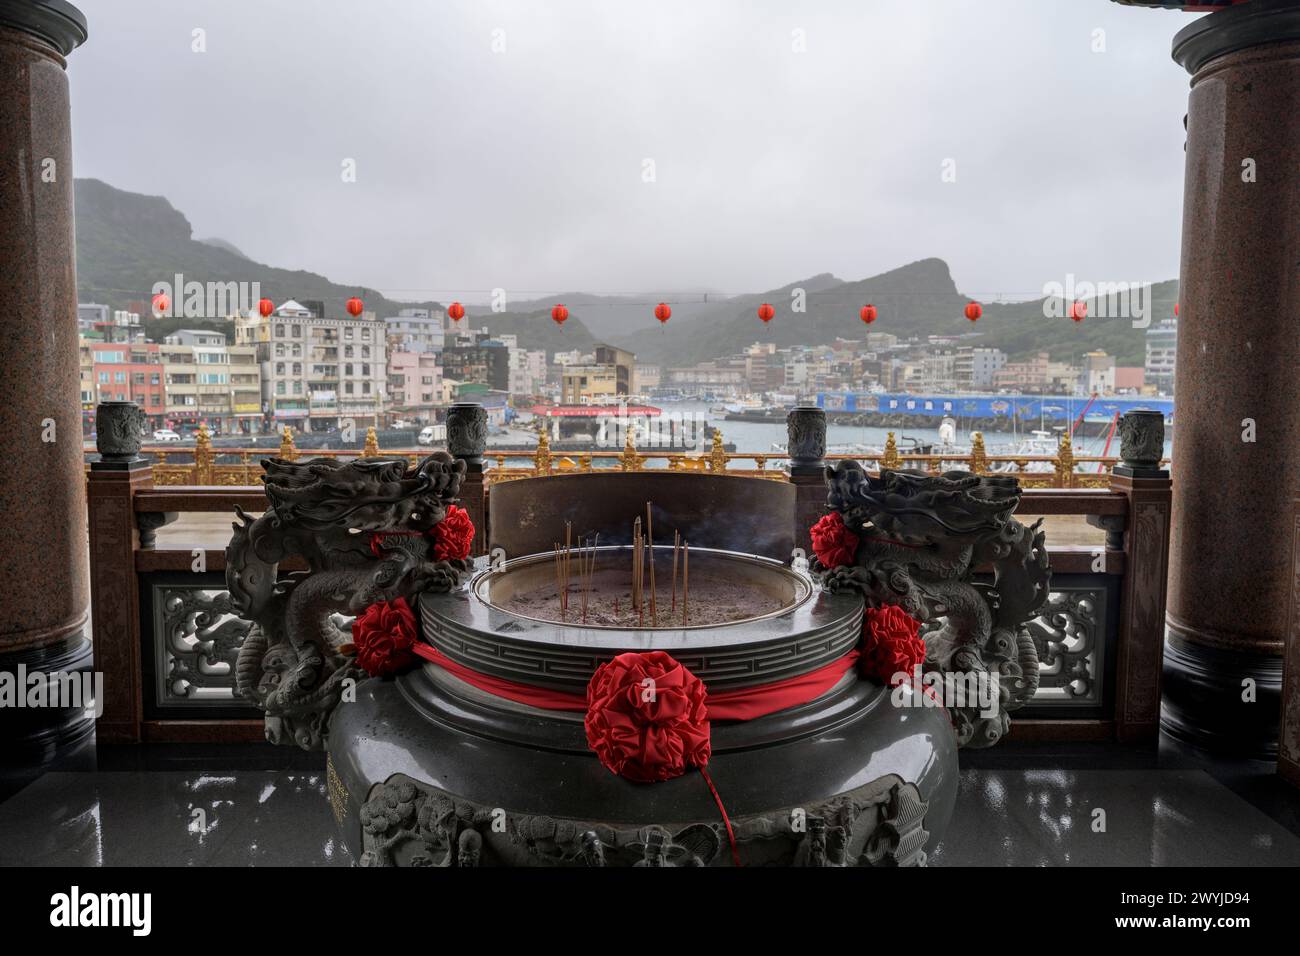 Ruhiger Blick auf einen Hafen von einem Tempelbalkon mit roten Laternen und brennendem Weihrauch vor nebeliger Kulisse Stockfoto